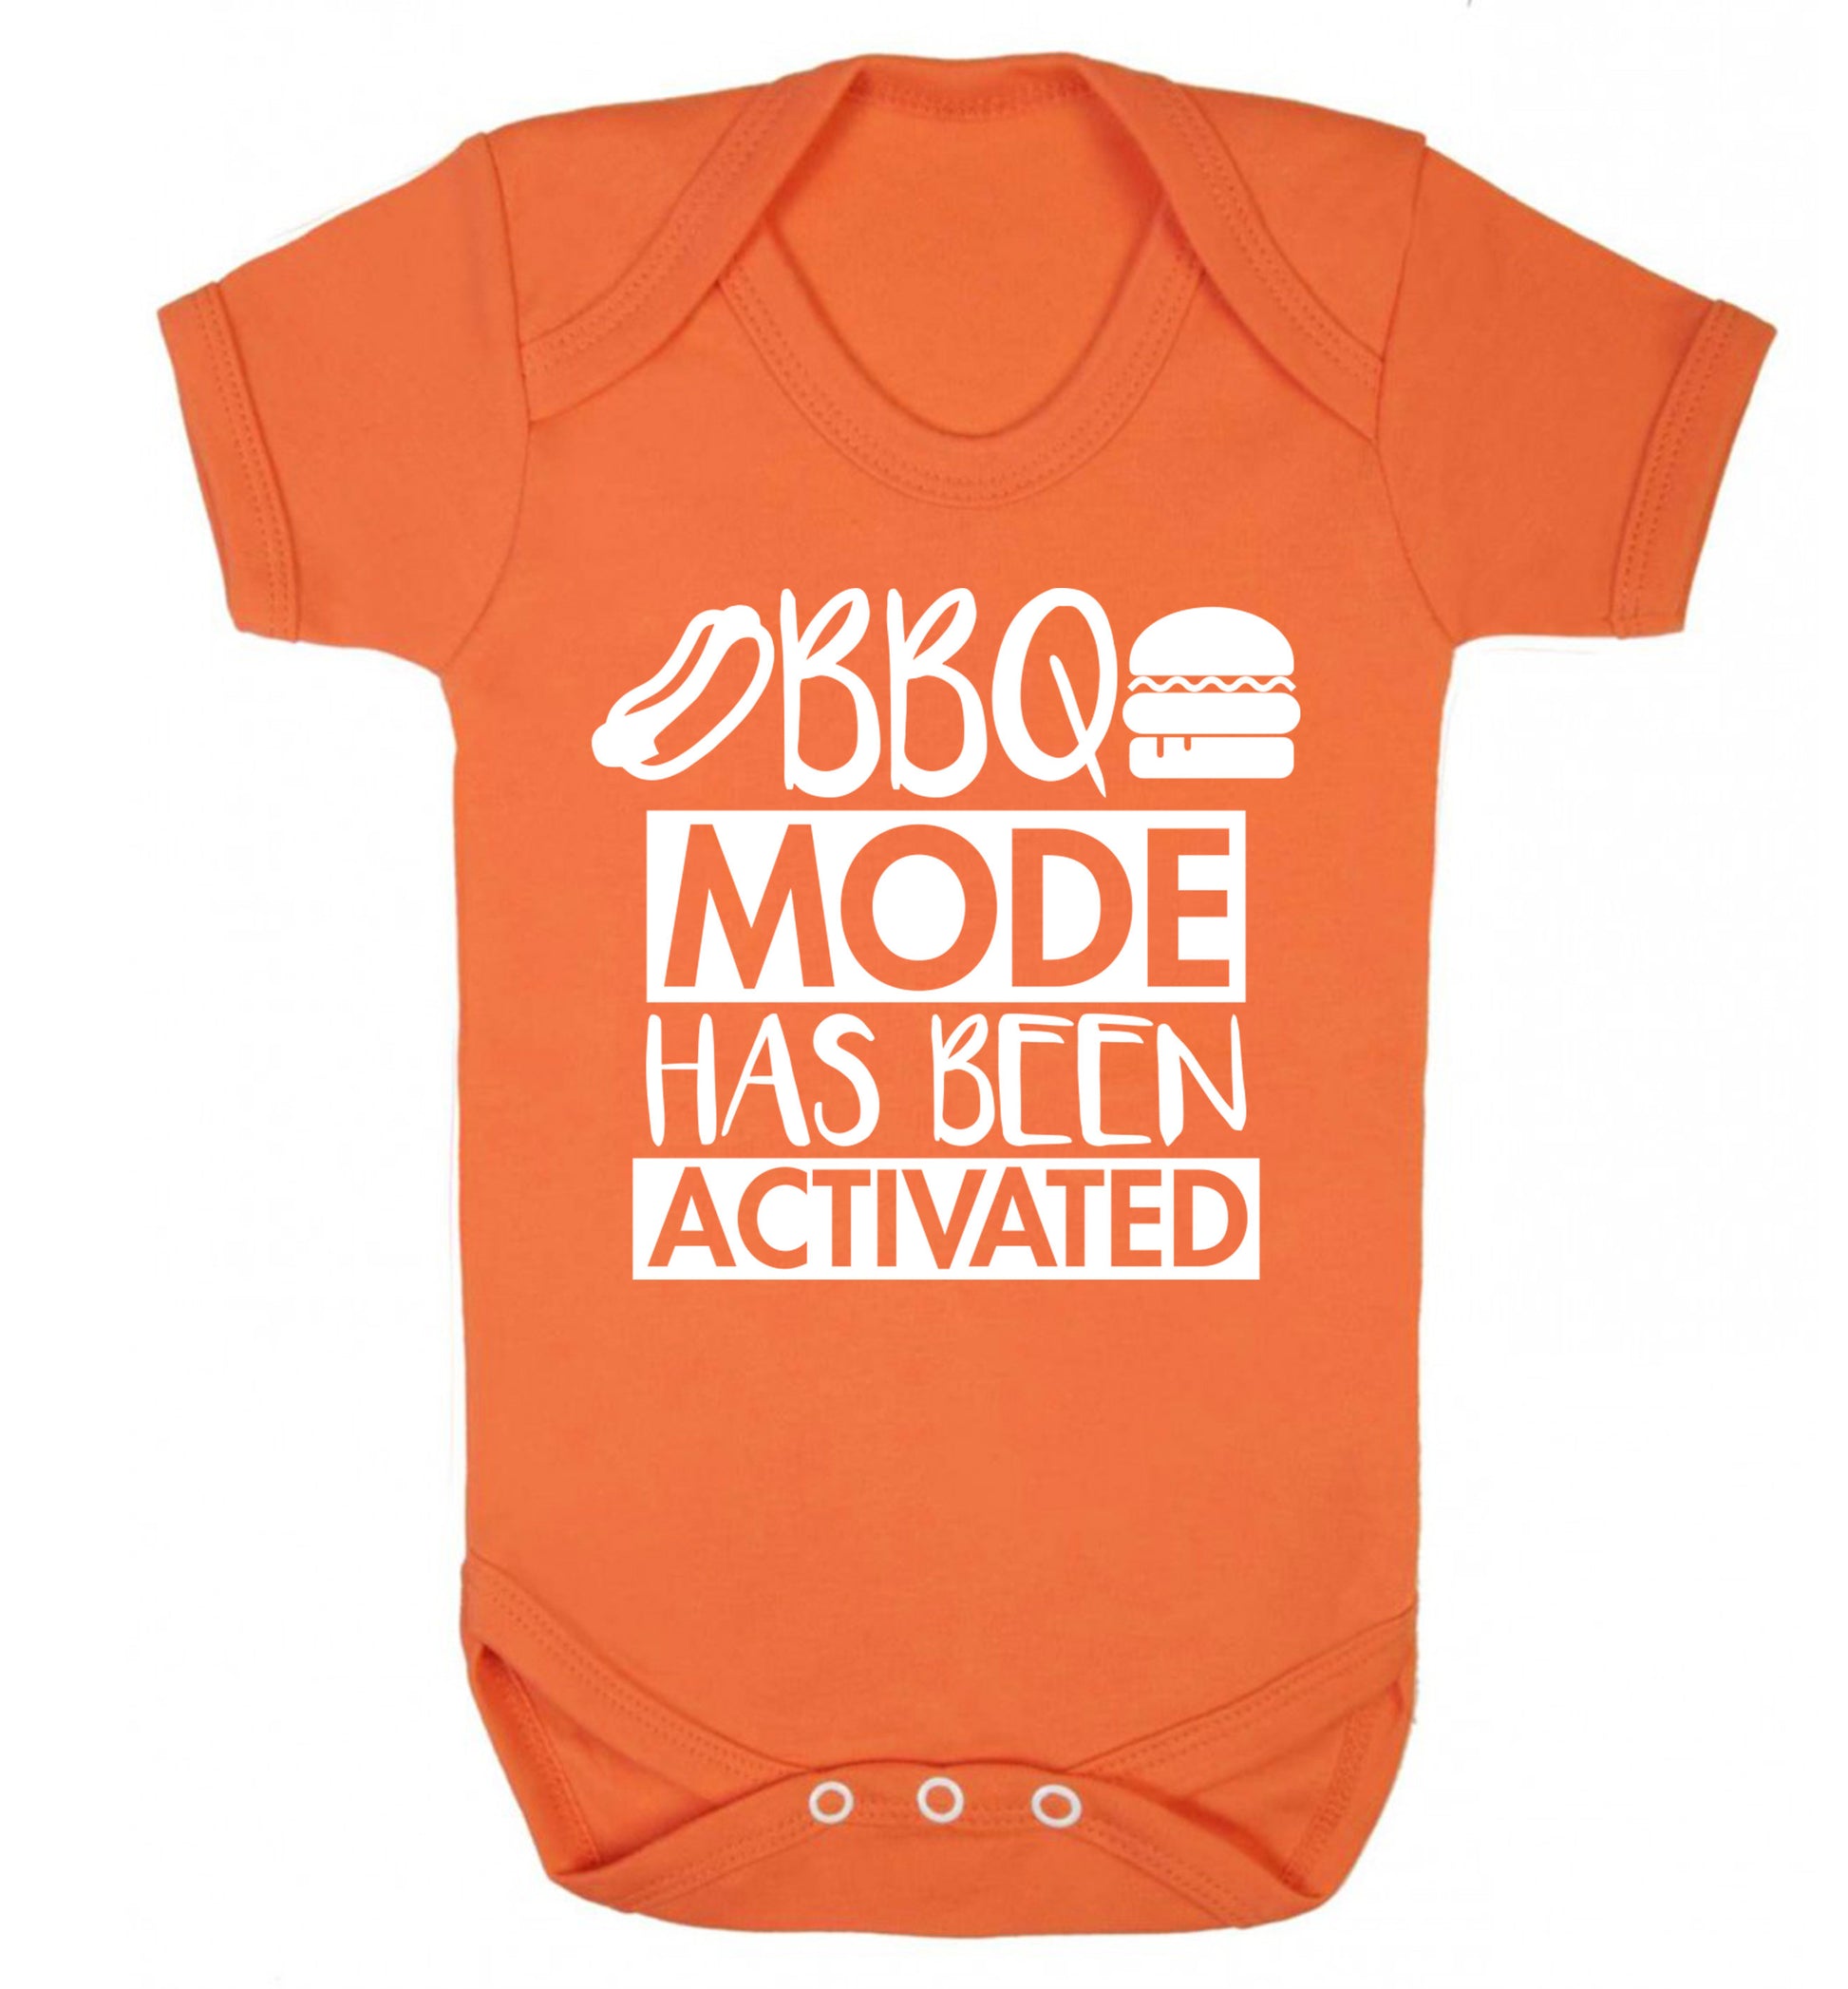 Bbq mode has been activated Baby Vest orange 18-24 months